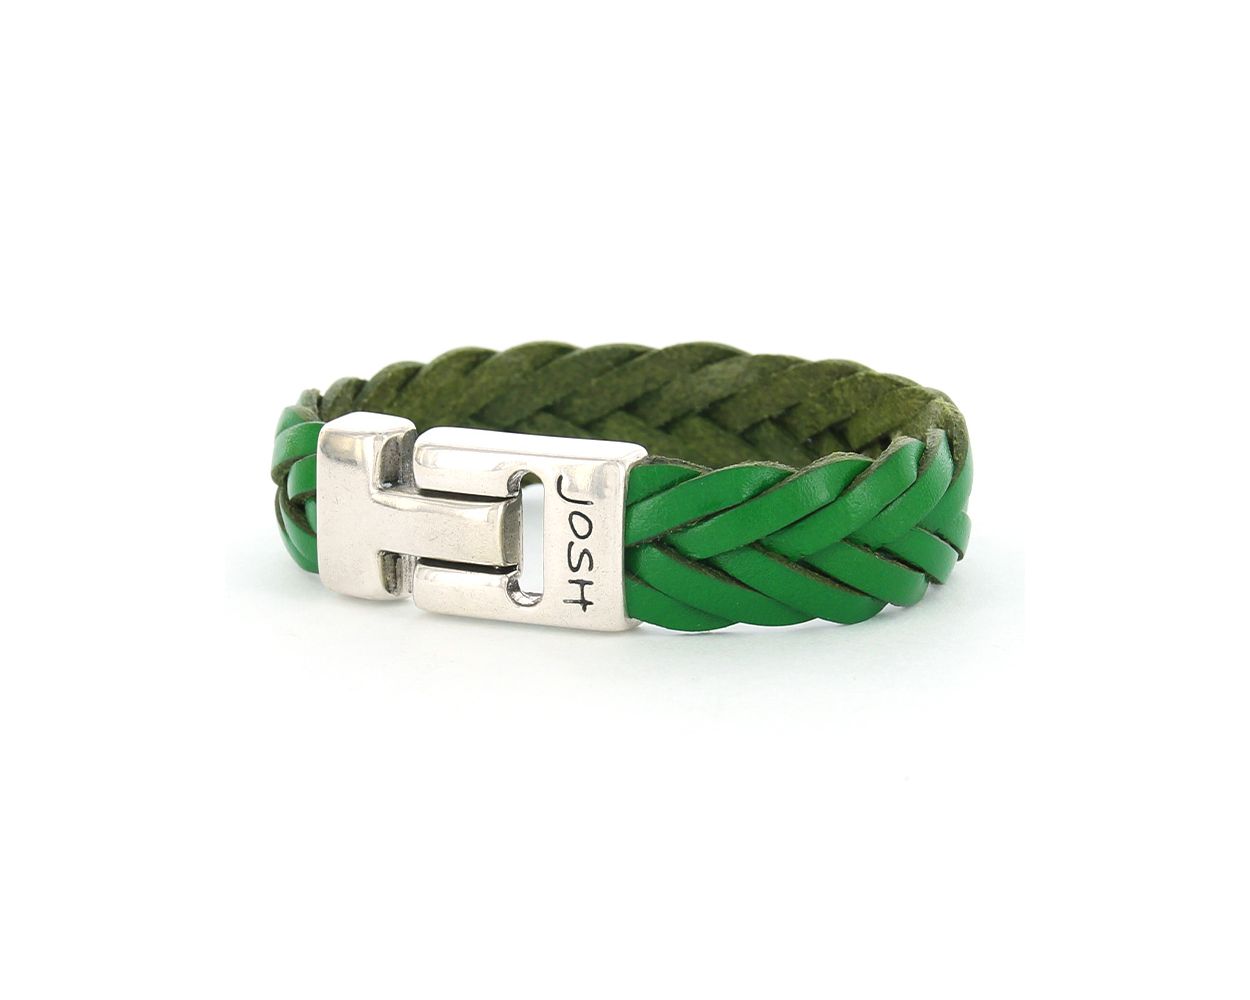 Josh armband Udine Light Green - 24001